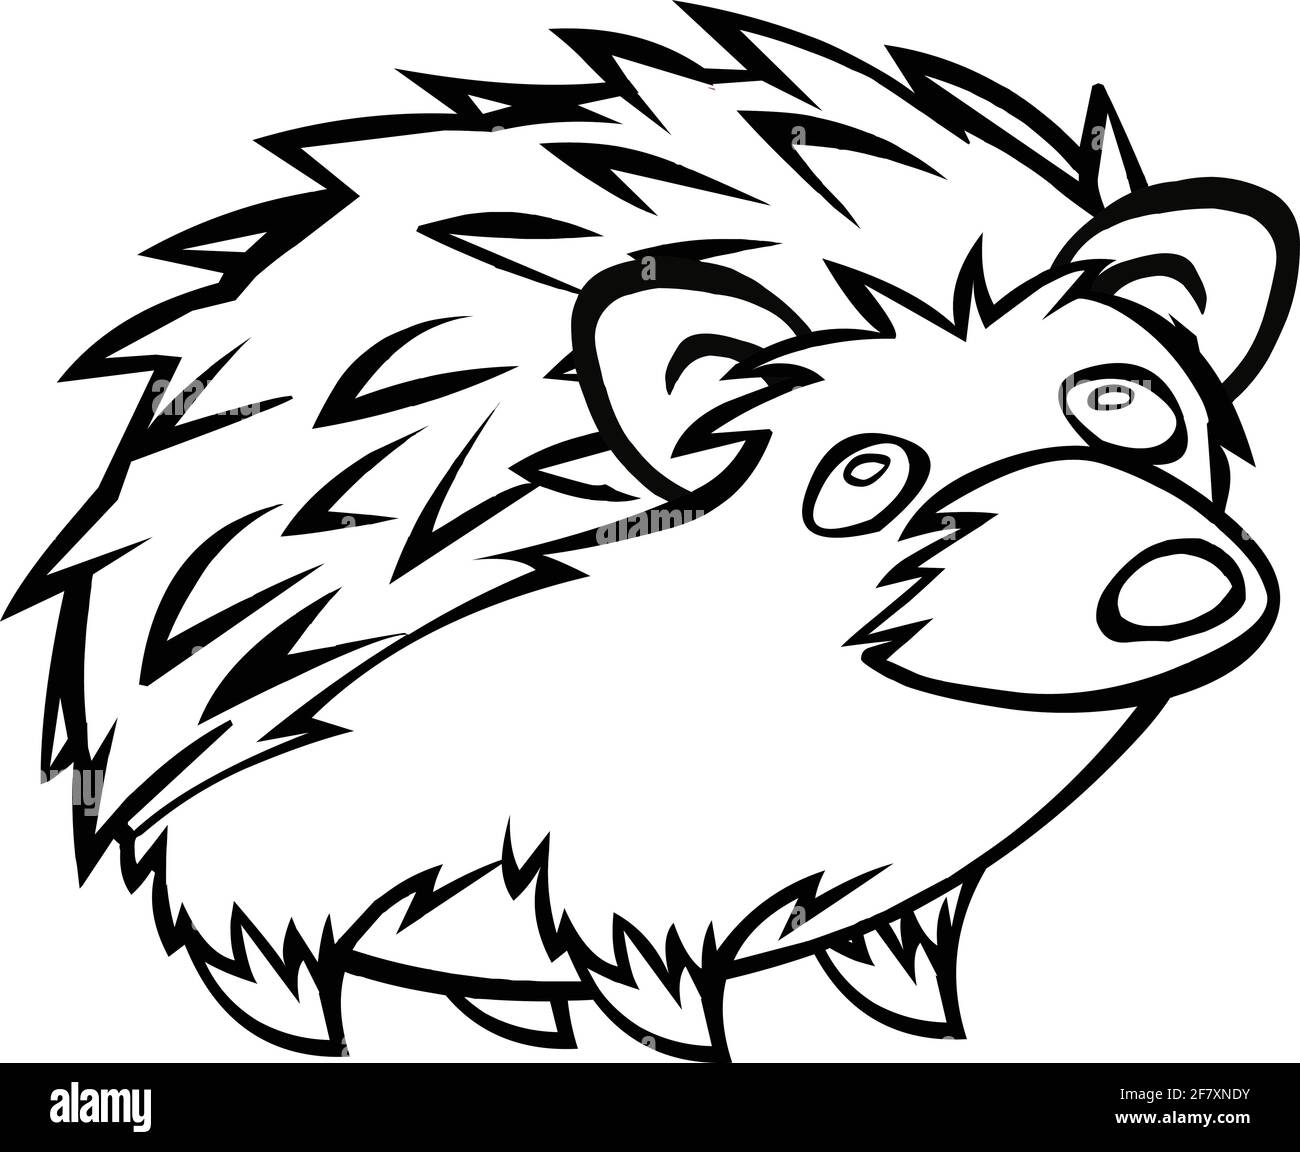 Stachelschwein Cartoon schwarze Linie Zeichnung auf weißem Hintergrund Stock Vektor